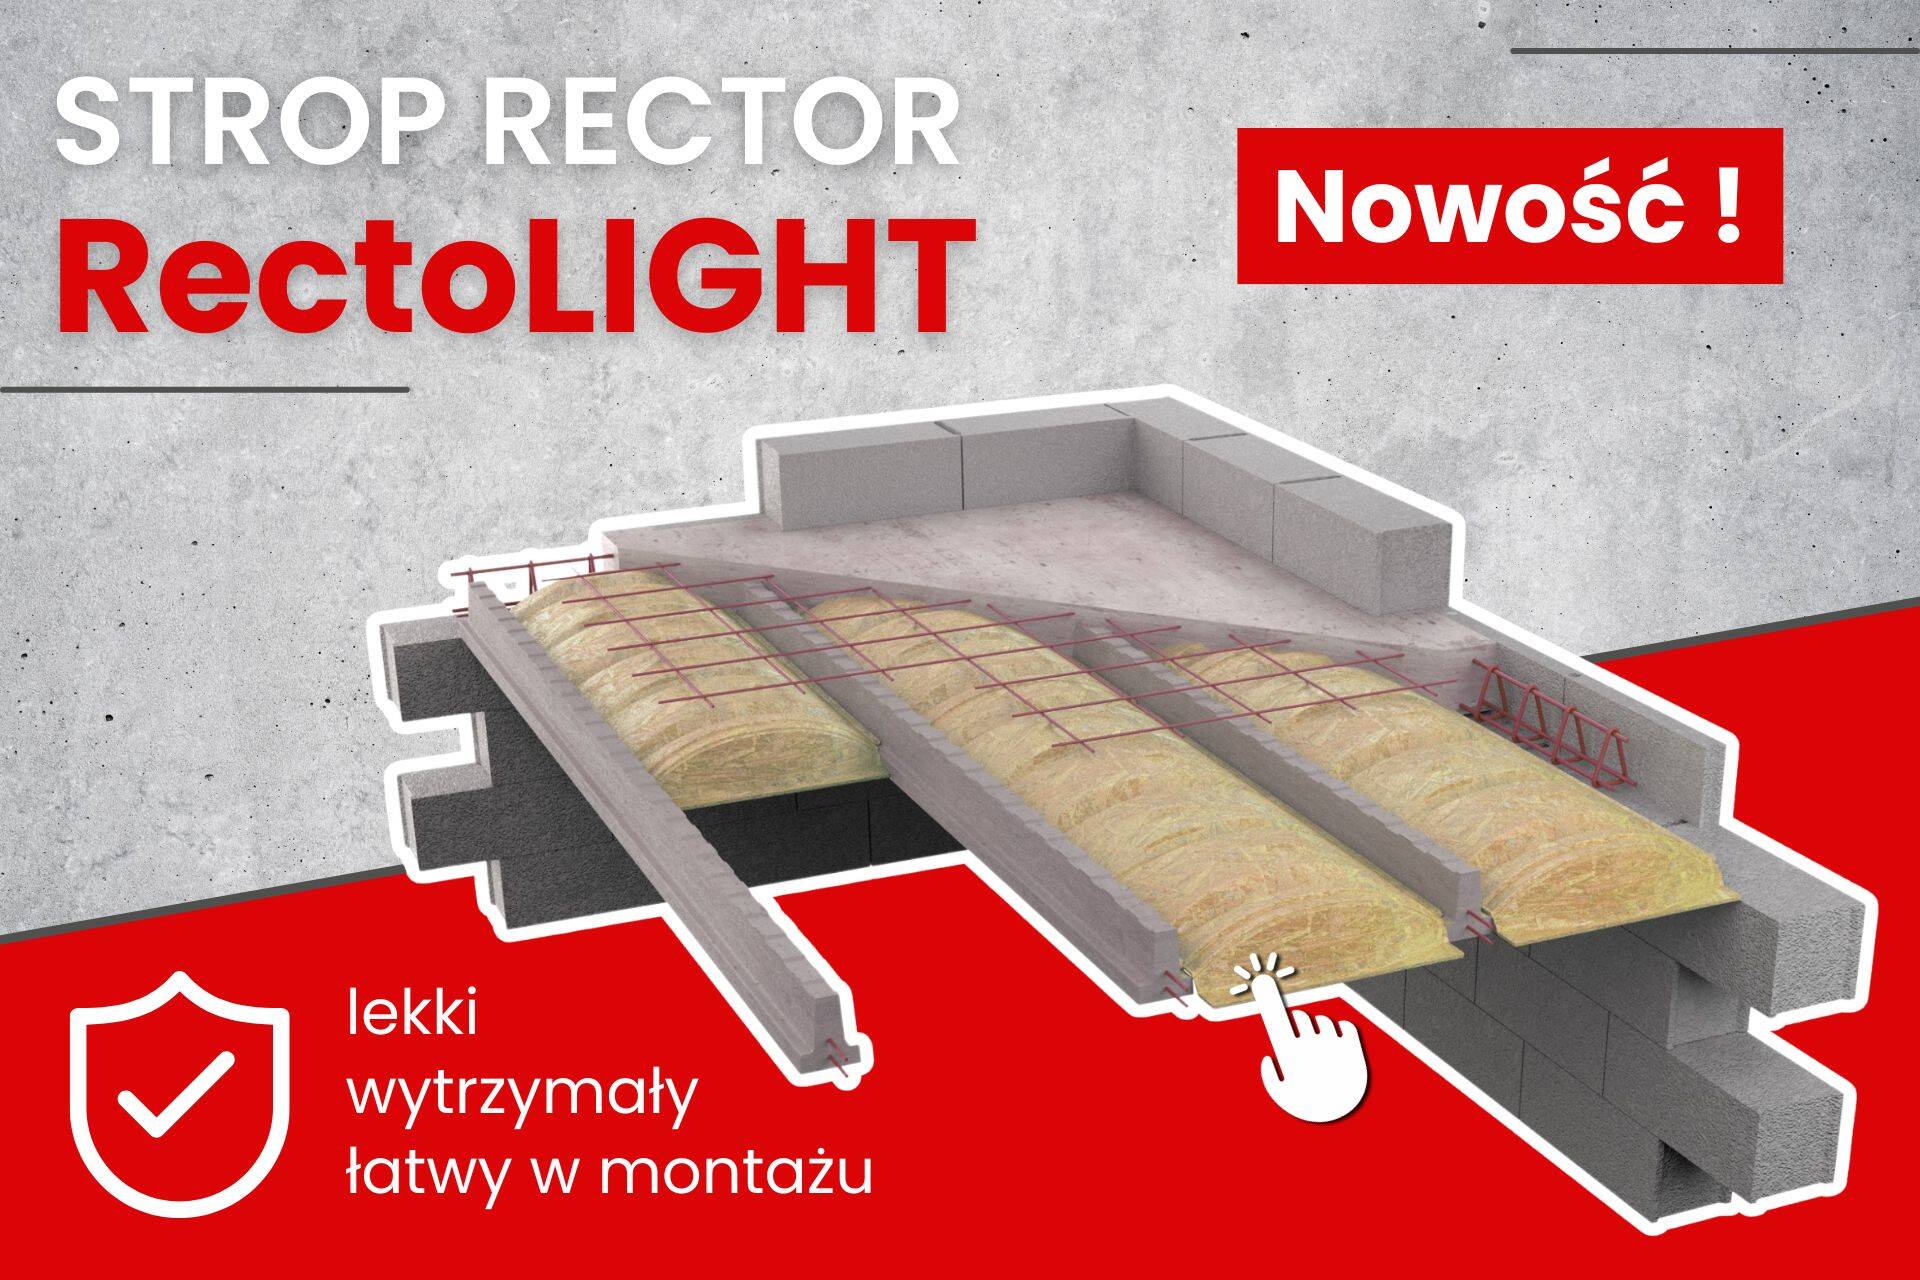 Strop Rector Rectolight - nowość w budowlanym sklepie internetowym Lubar